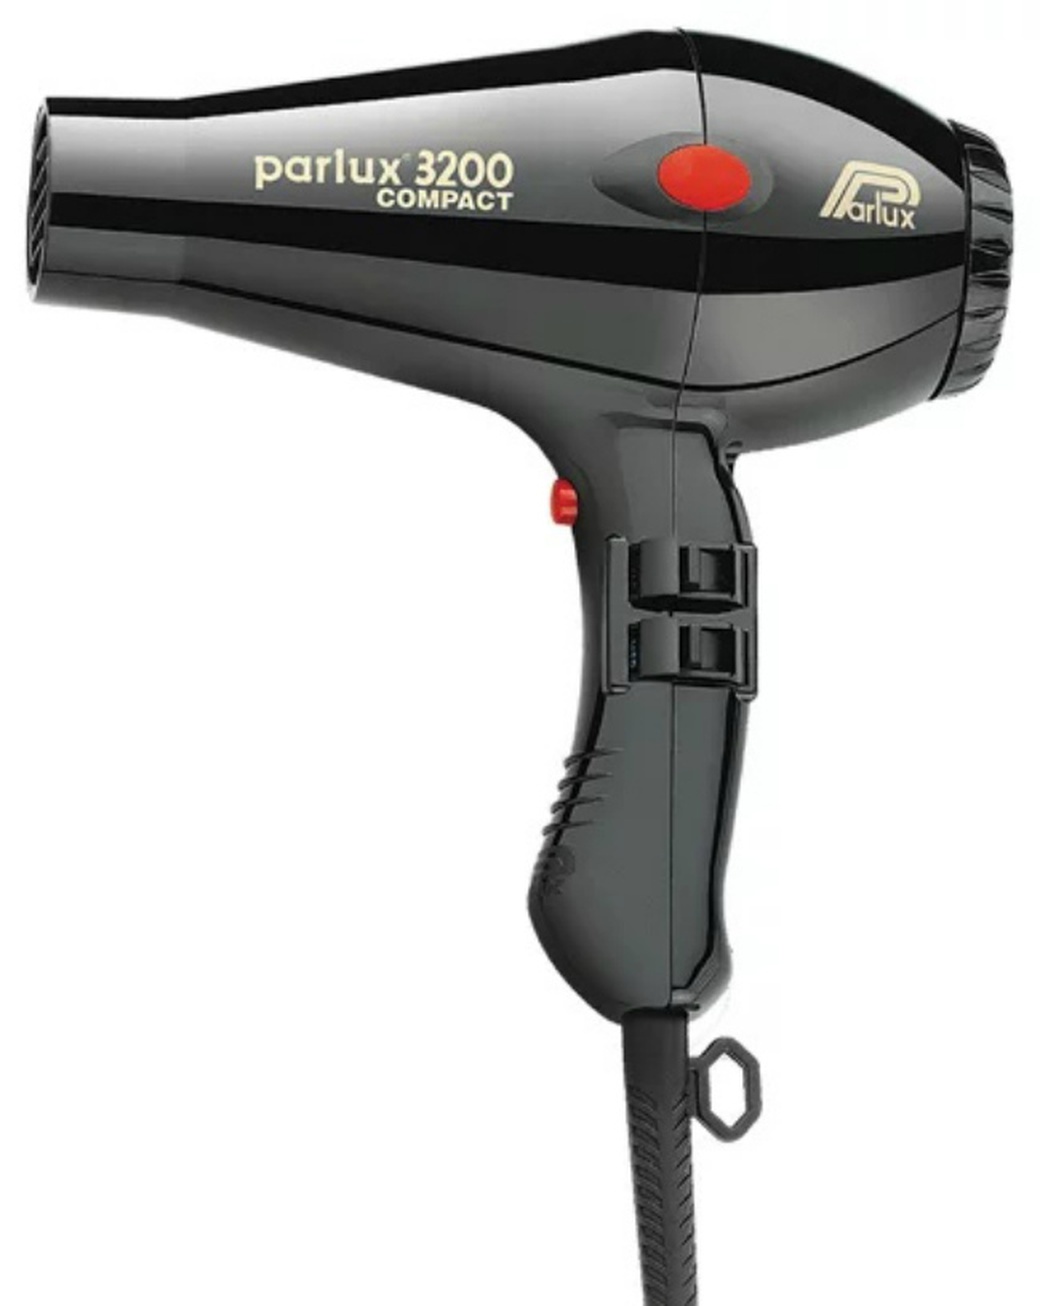 Фен Parlux 3200 Compact, 1900 Вт, 2 насадки, черный фото